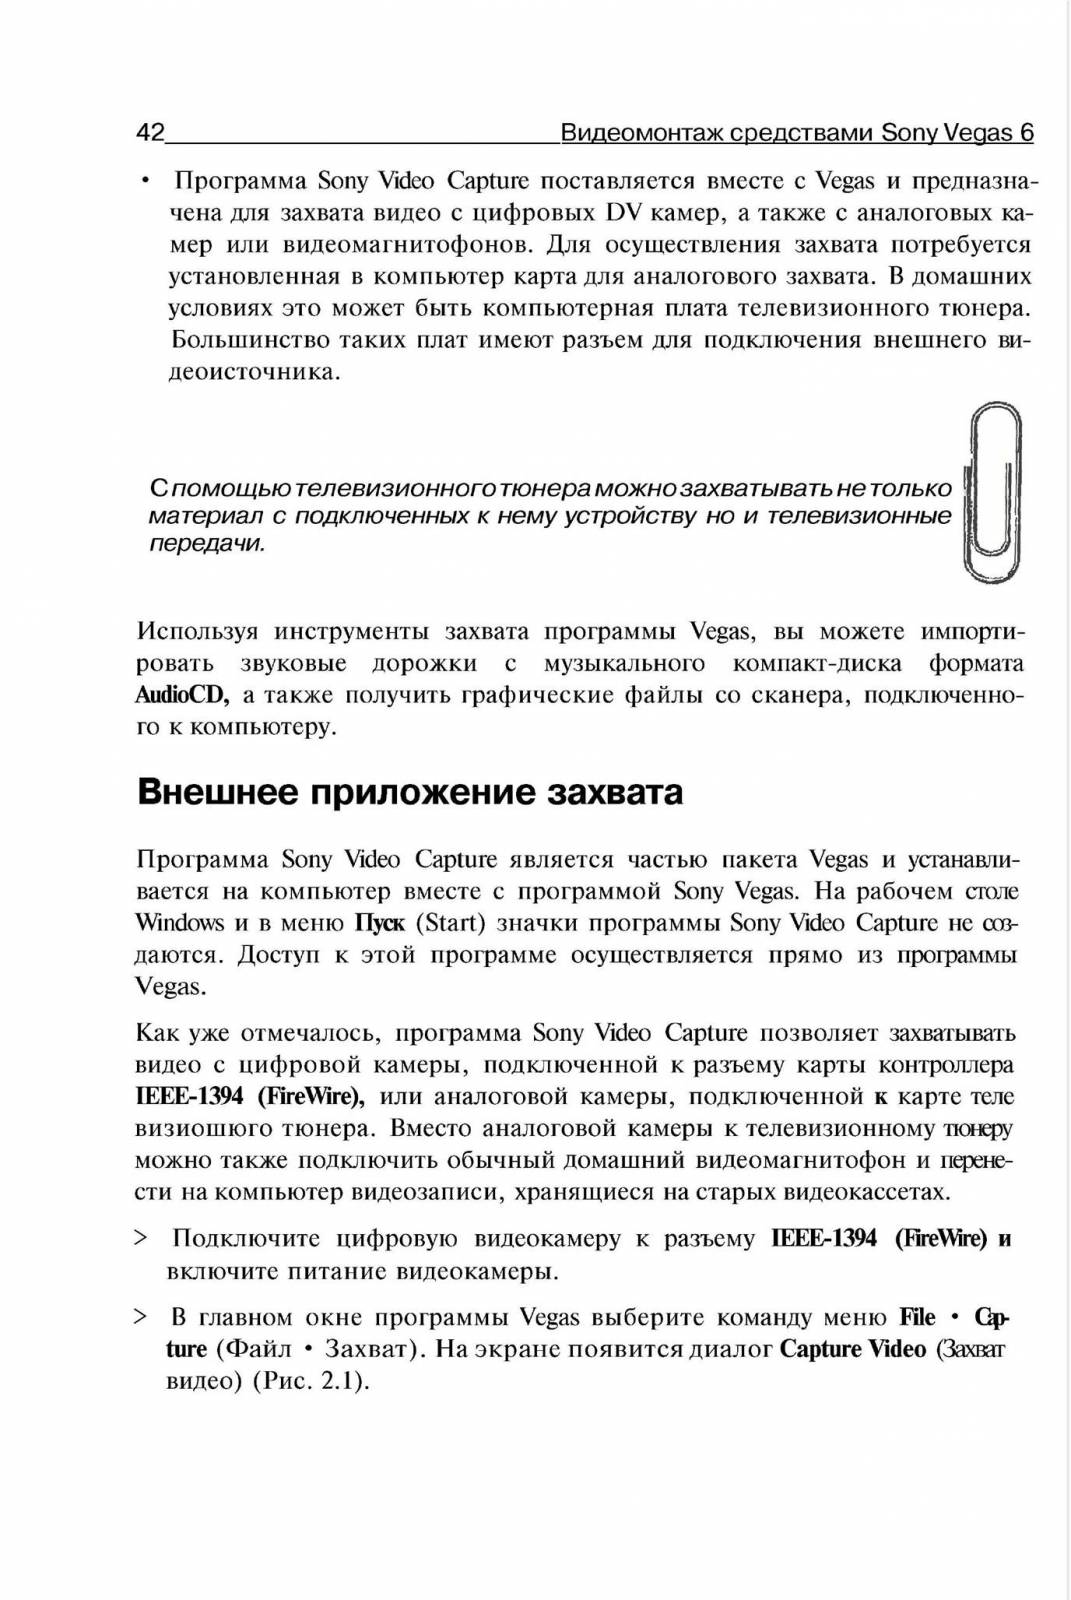 http://redaktori-uroki.3dn.ru/_ph/13/127078664.jpg